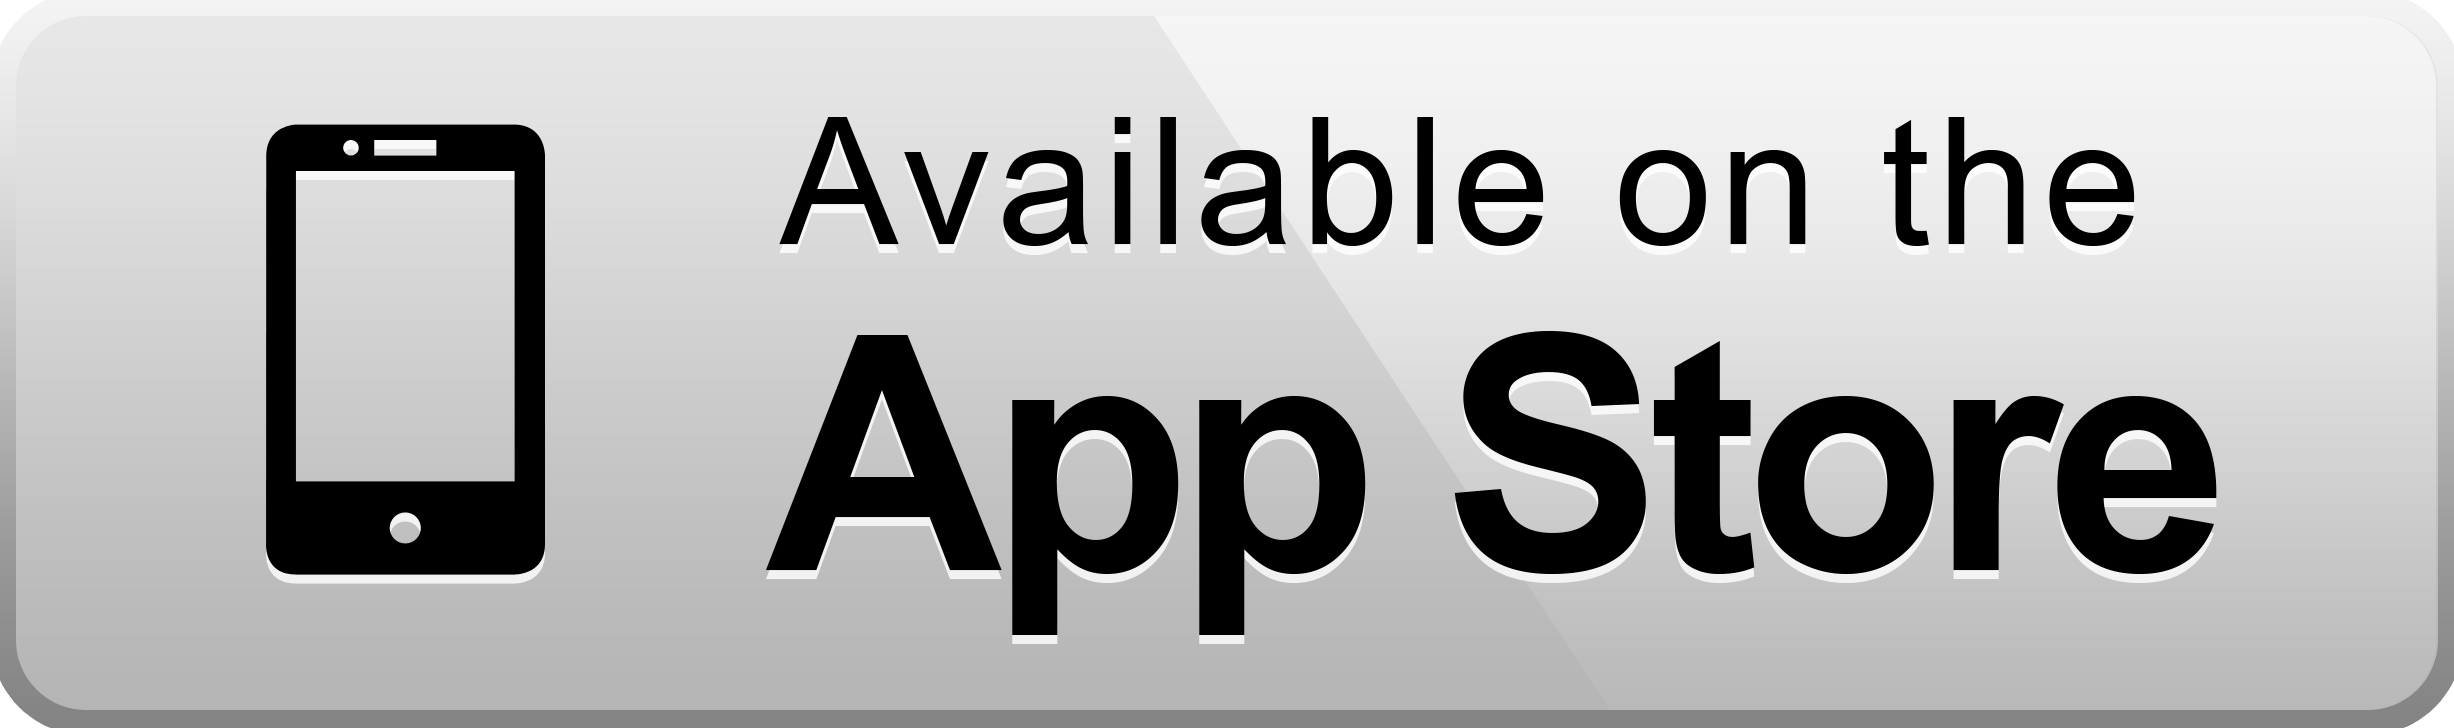 Ап стор на андроид. Доступно в app Store. Значок апп стор. App Store приложения. Загрузите в app Store.